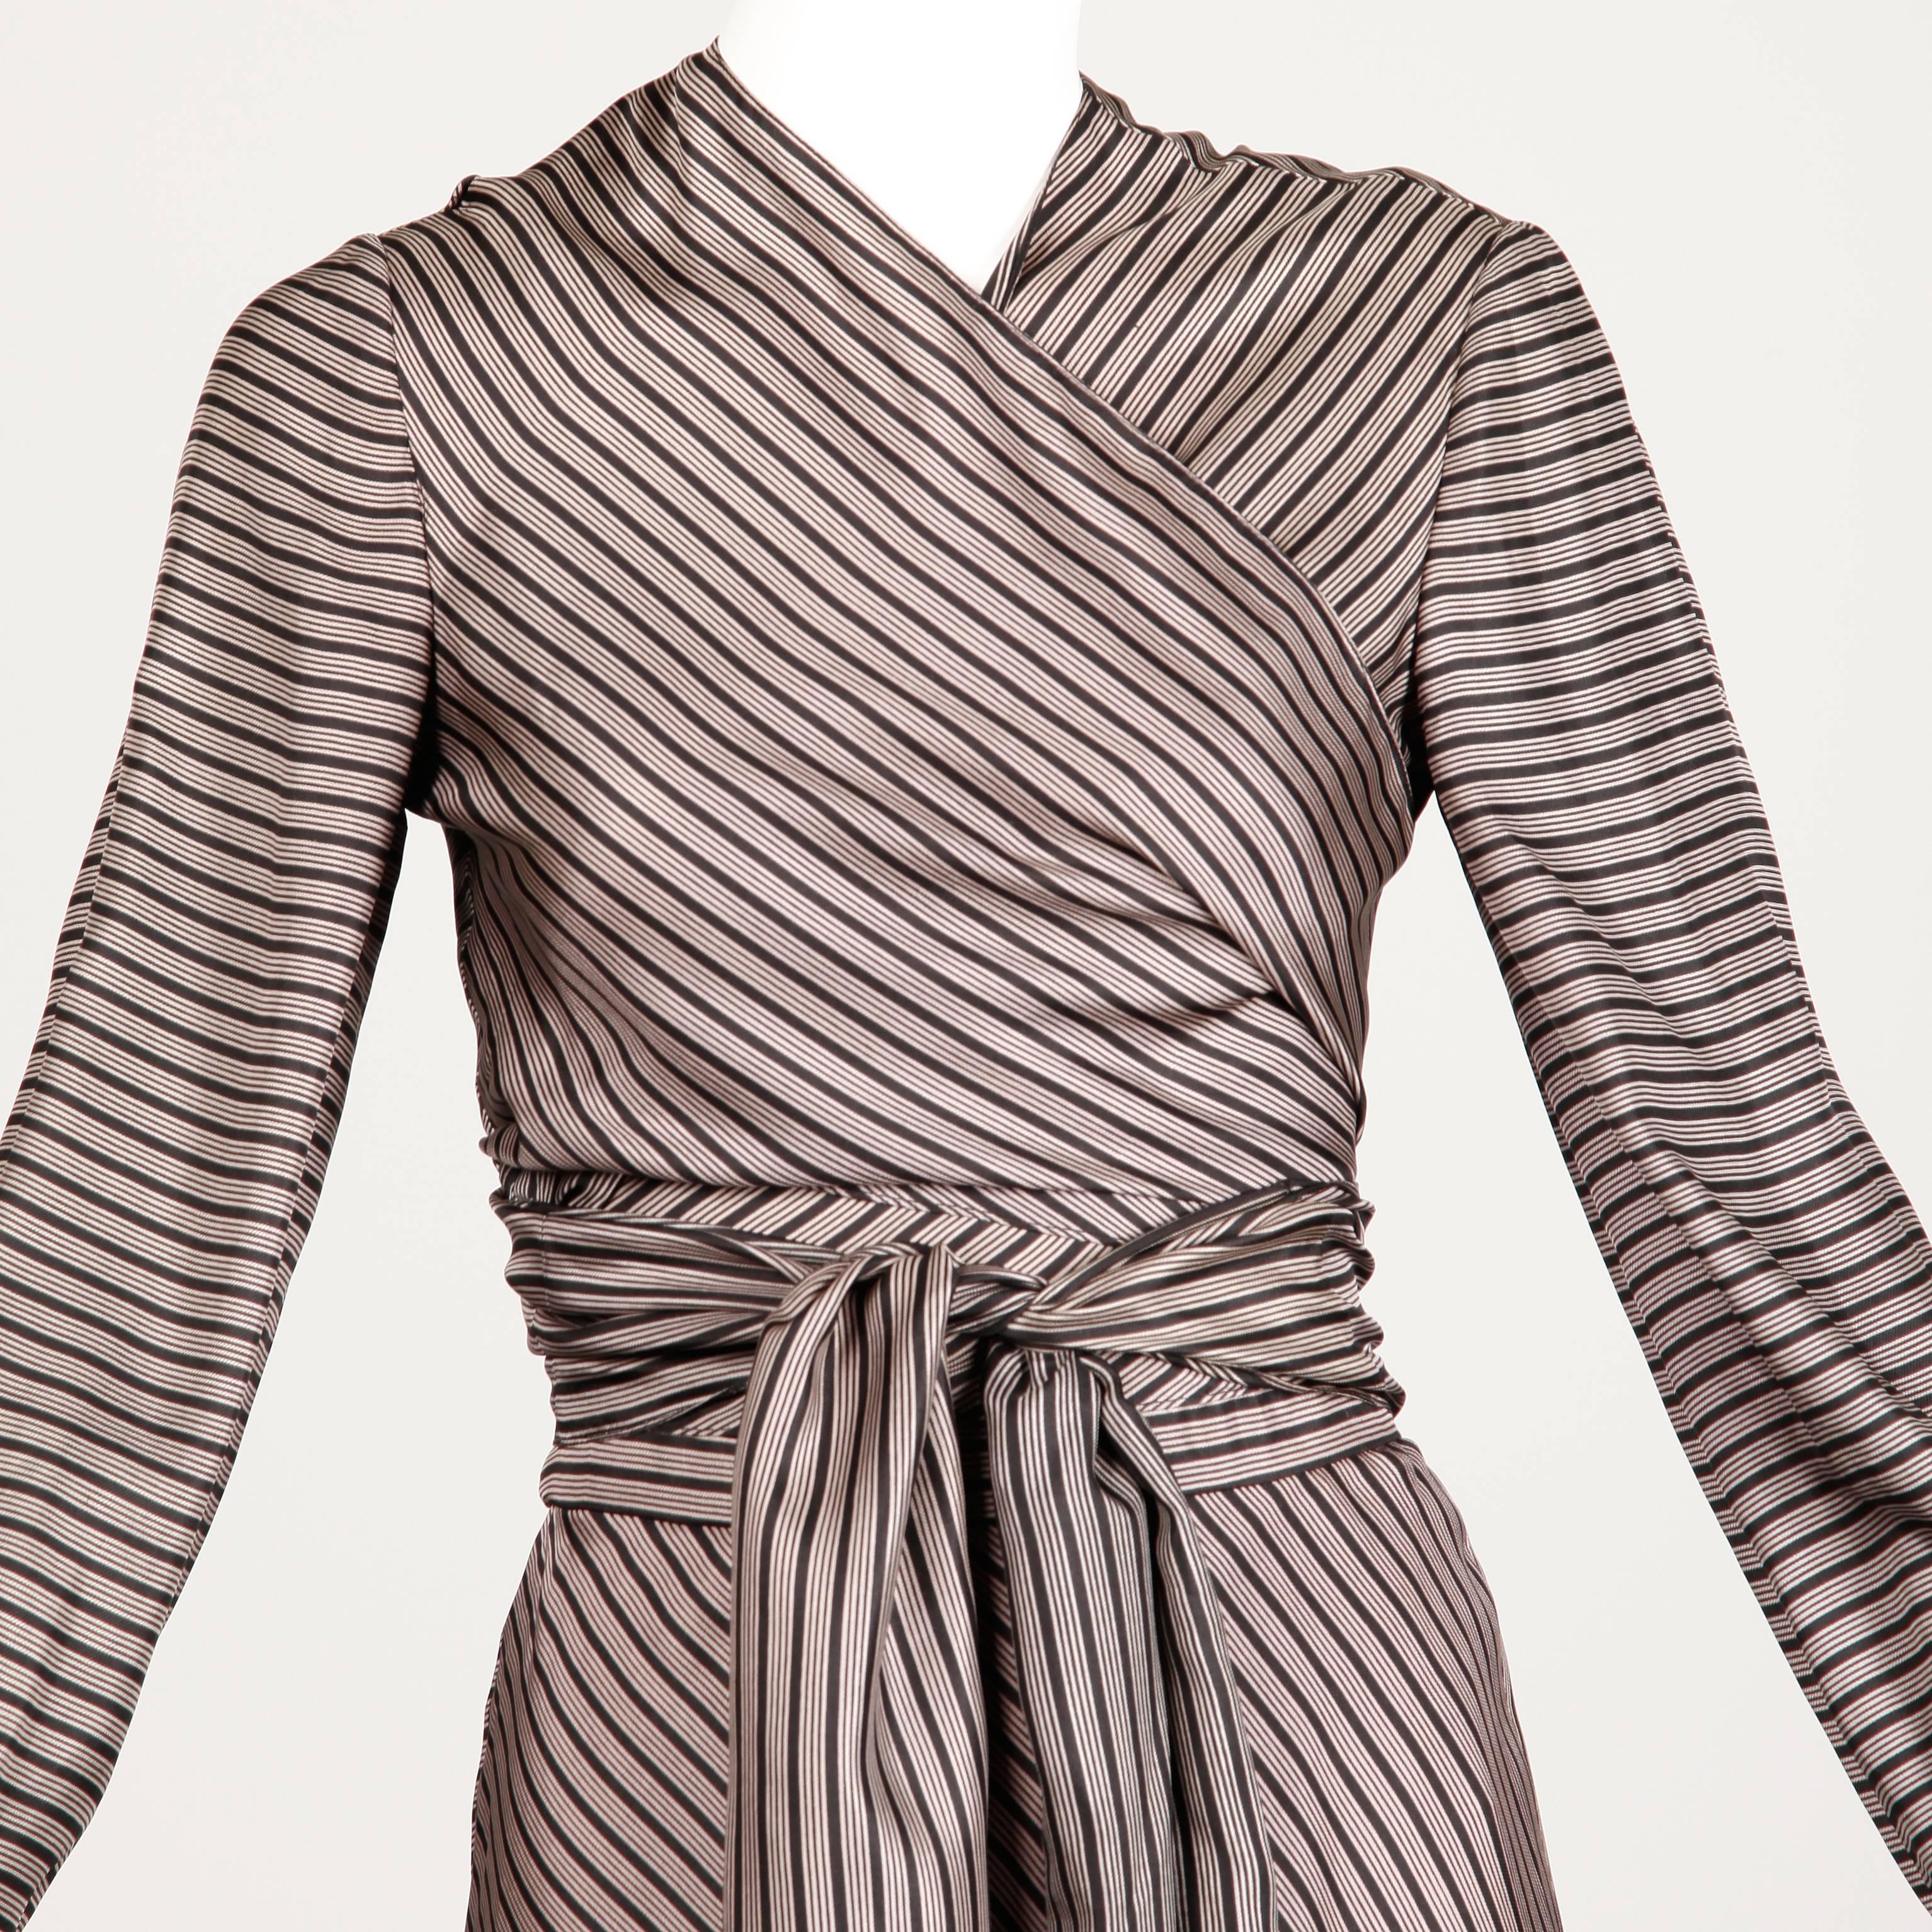 Jean Patou 1970s Vintage Silk Striped Wrap Top + Maxi Skirt Dress Ensemble 3